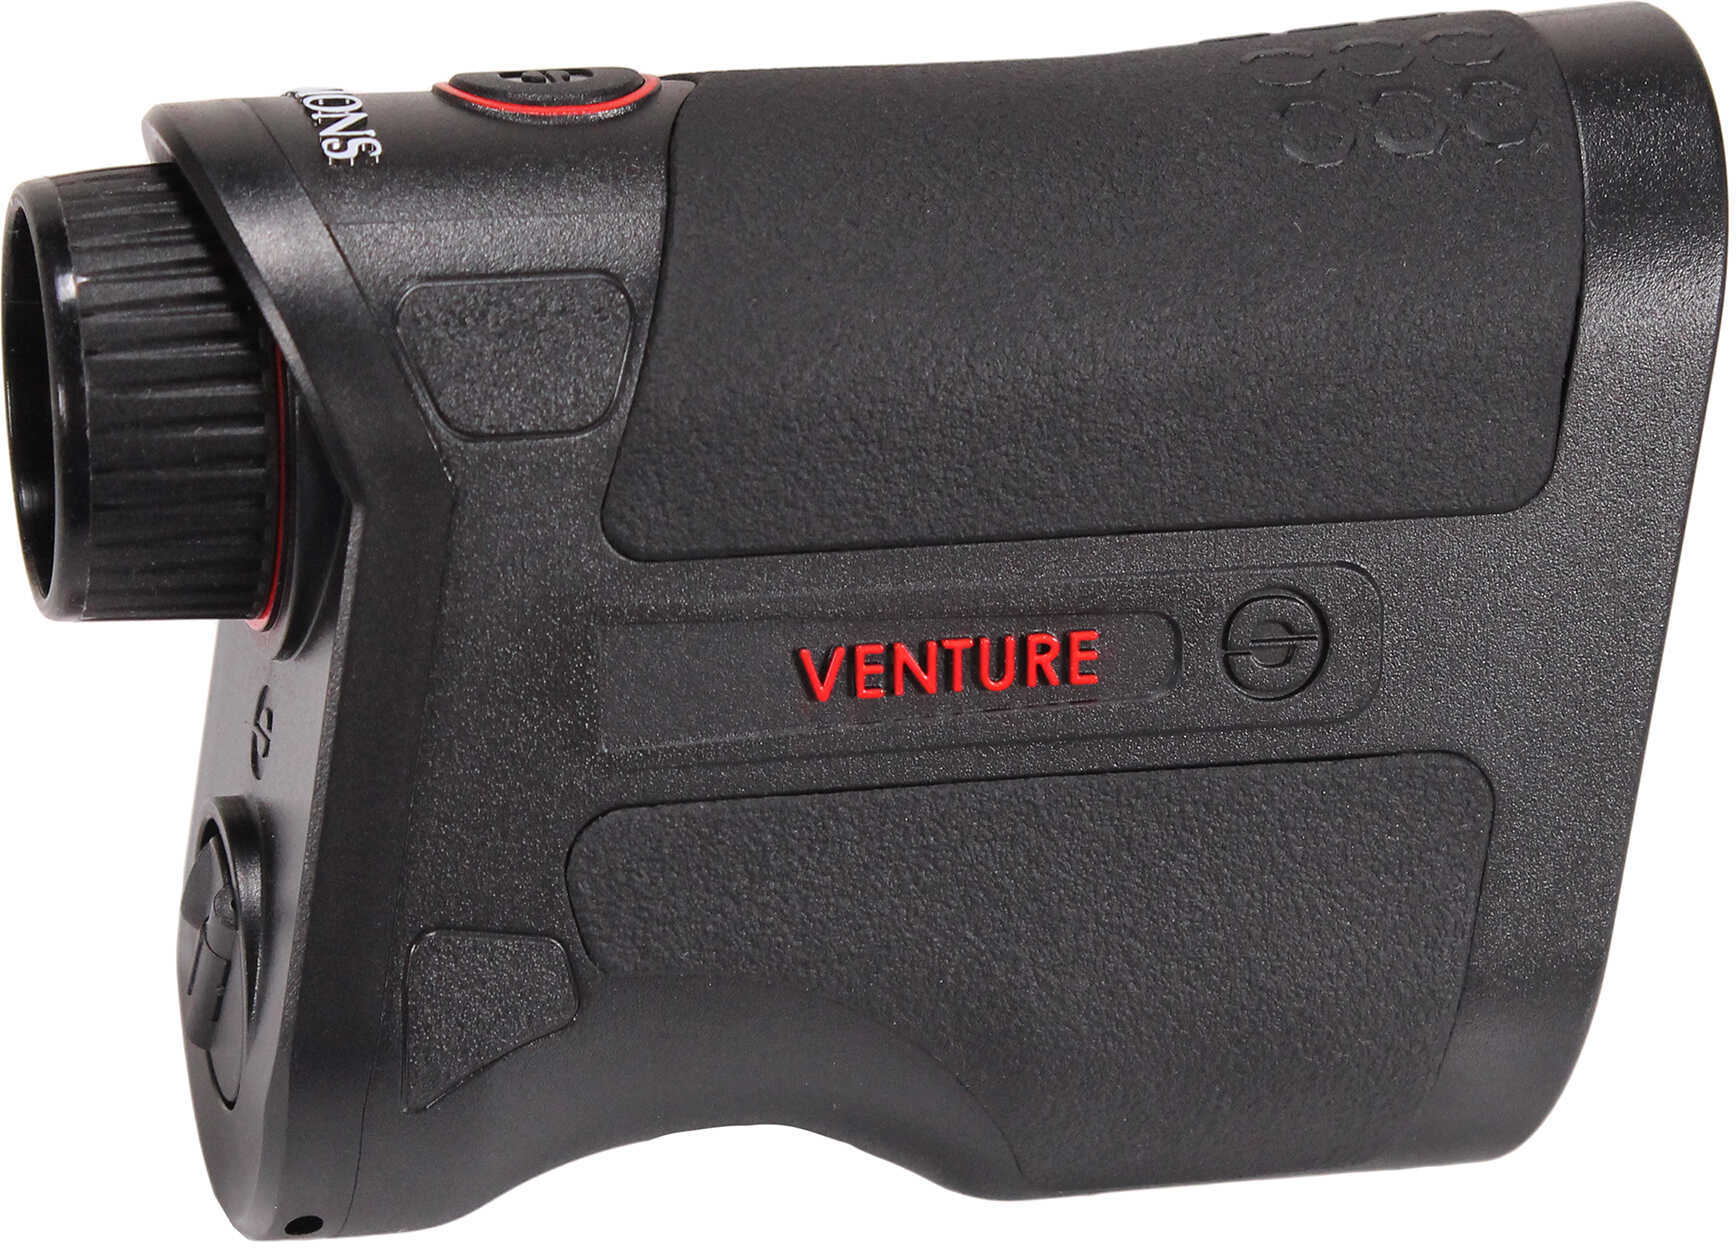 Simmons Venture Laser Rangefinder, 6x20mm